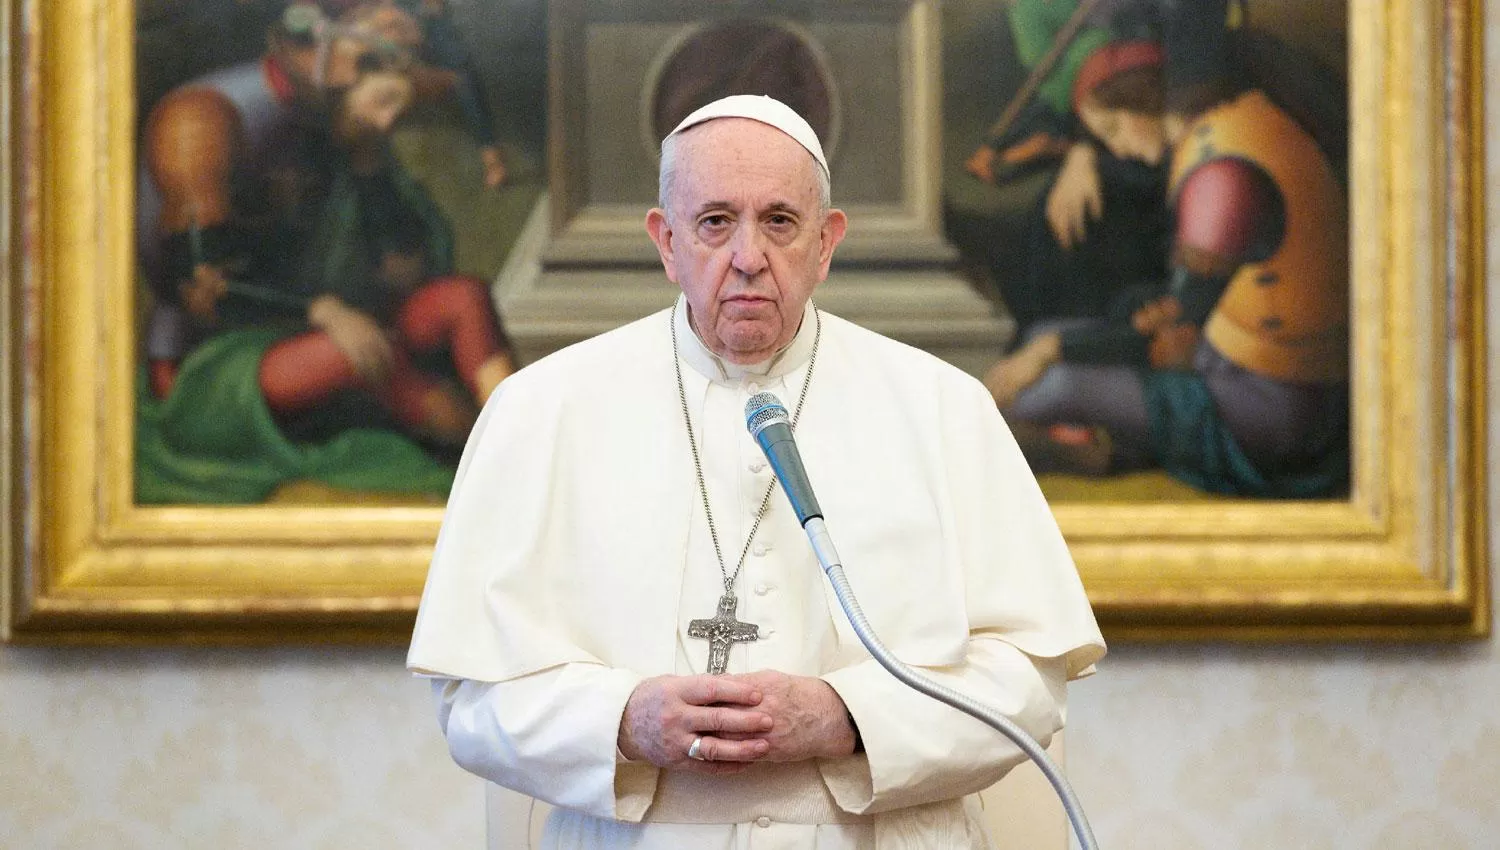 El Papa Francisco expresó su tristeza por la desaparición de 130 migrantes desde el jueves tras un naufragio en el Mediterráneo.